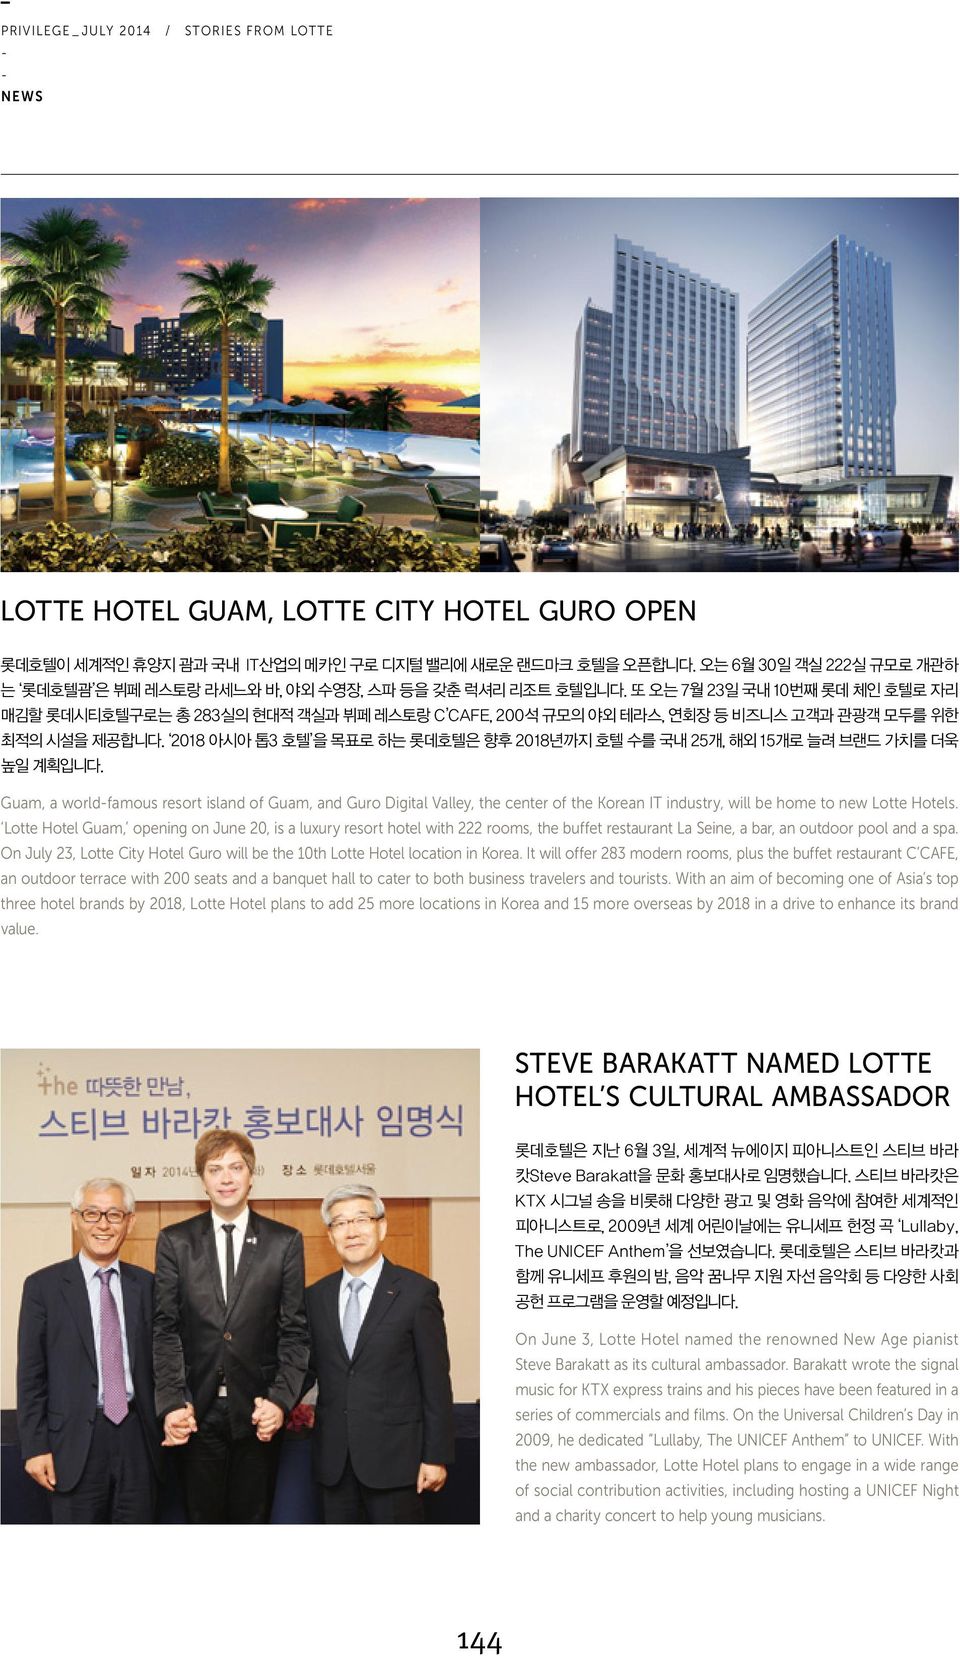 2018 아시아 톱3 호텔 을 목표로 하는 롯데호텔은 향후 2018년까지 호텔 수를 국내 25개, 해외 15개로 늘려 브랜드 가치를 더욱 높일 계획입니다.